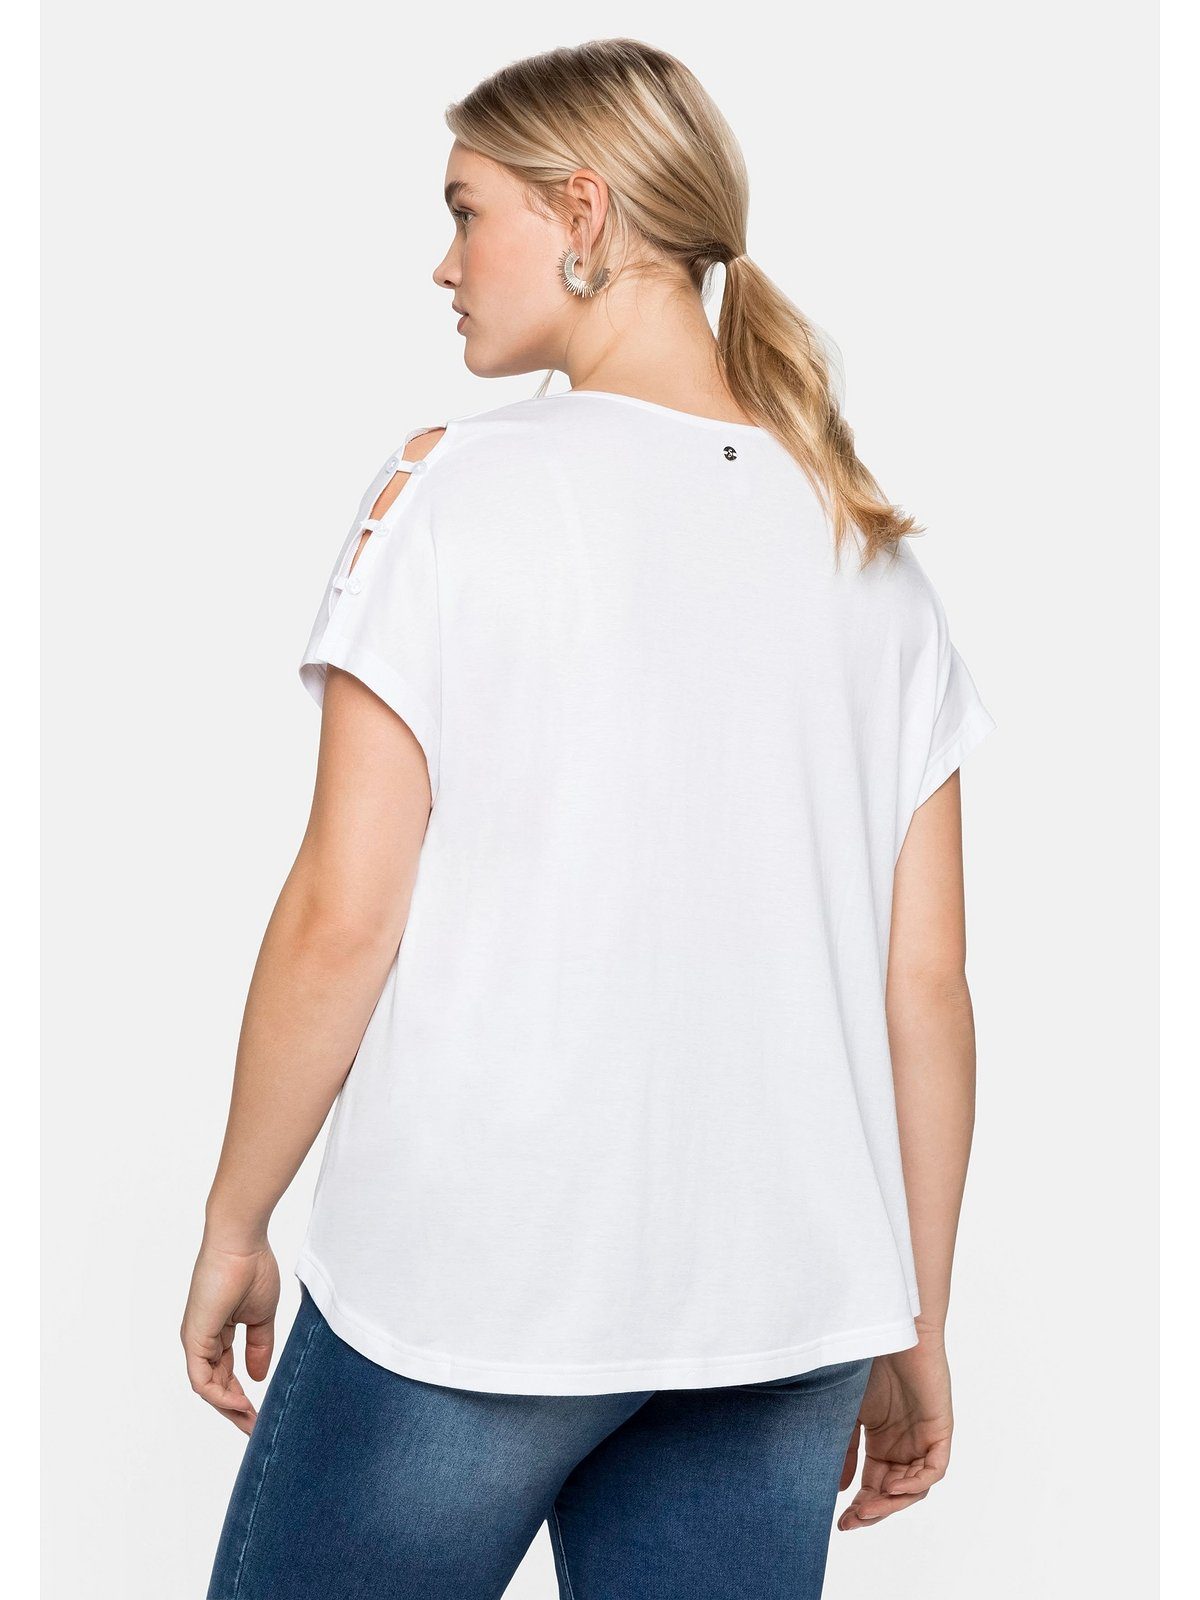 Sheego T-Shirt Schulterpartie, in Große A-Linie leichter Größen offener mit weiß